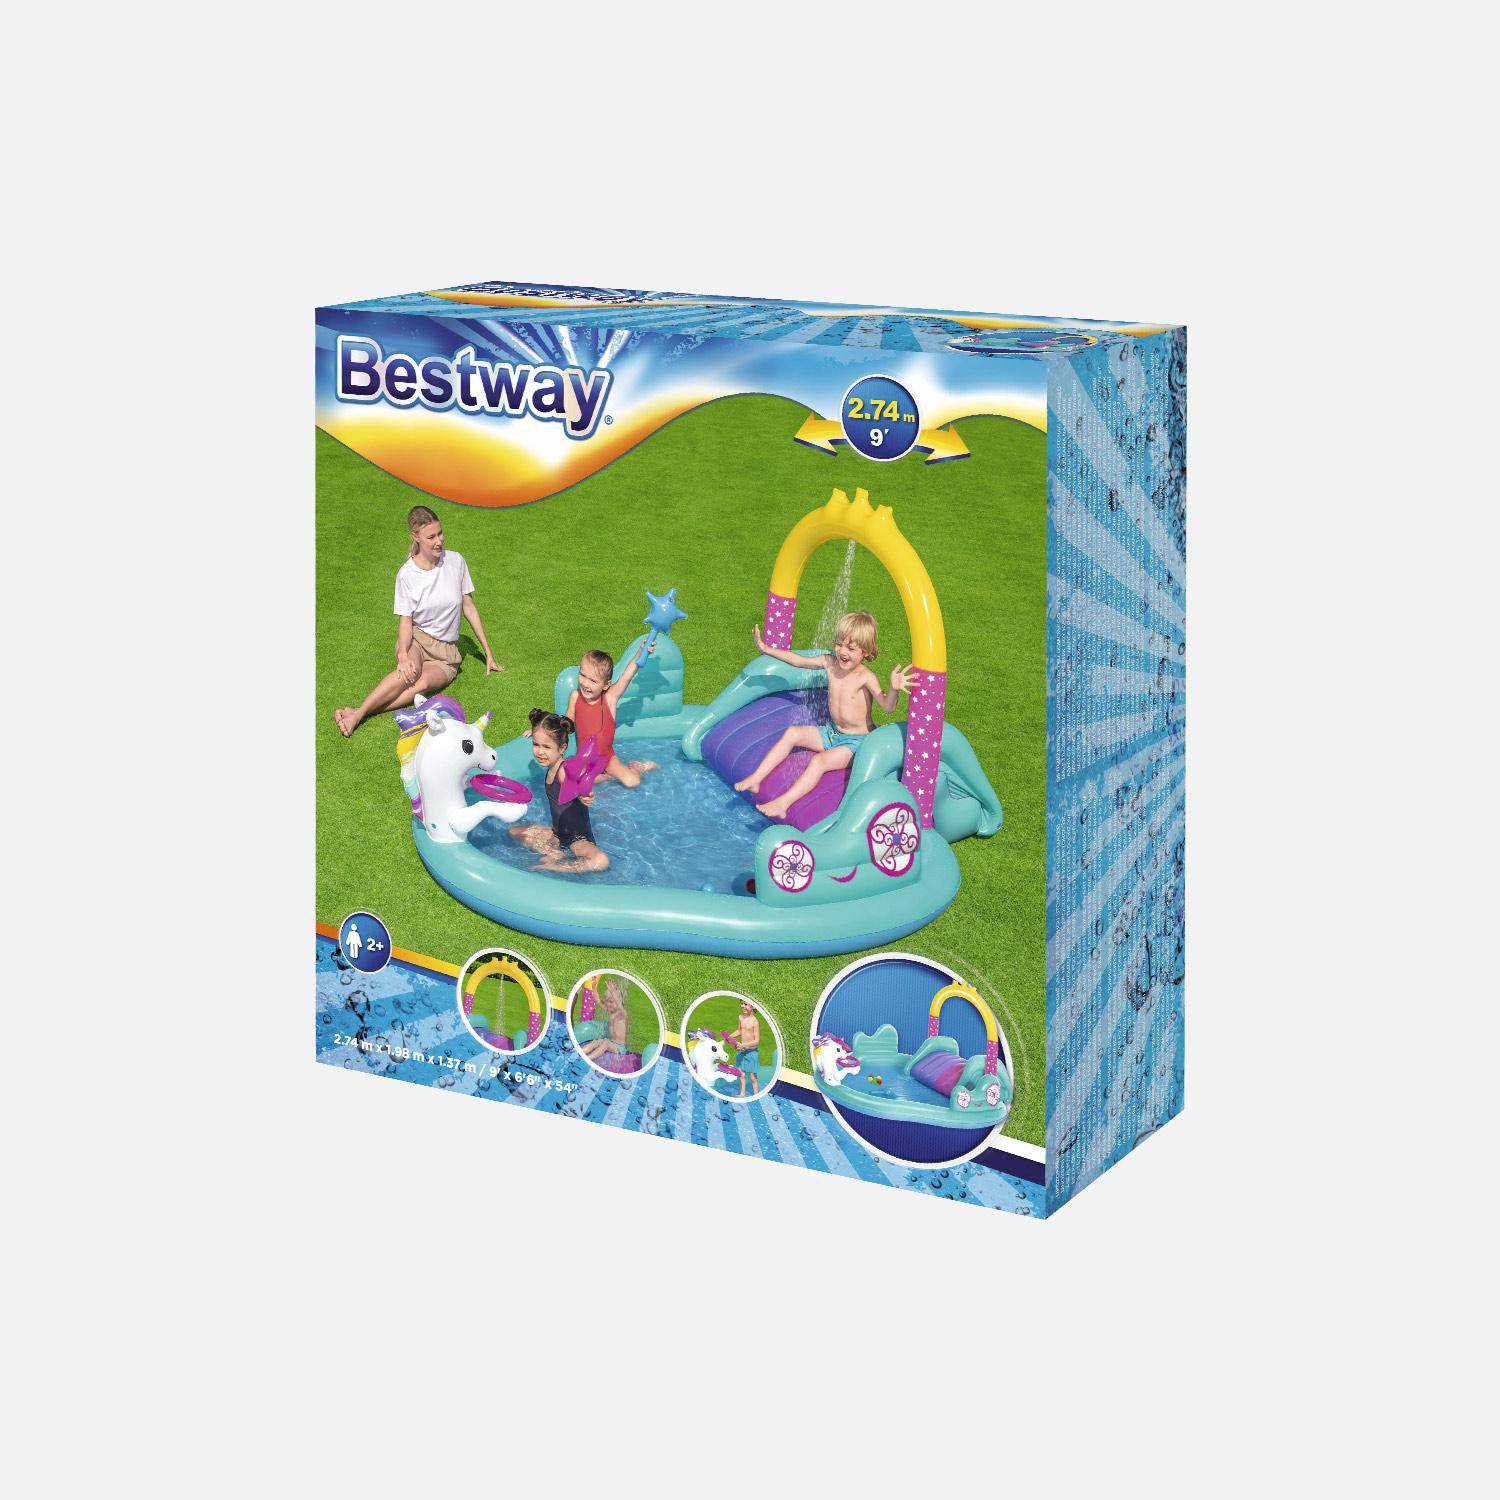 Aire de jeu gonflable avec toboggan et fontaine, pataugeoire de 274 x 198 x 137 cm, balles en plastique incluses Photo2